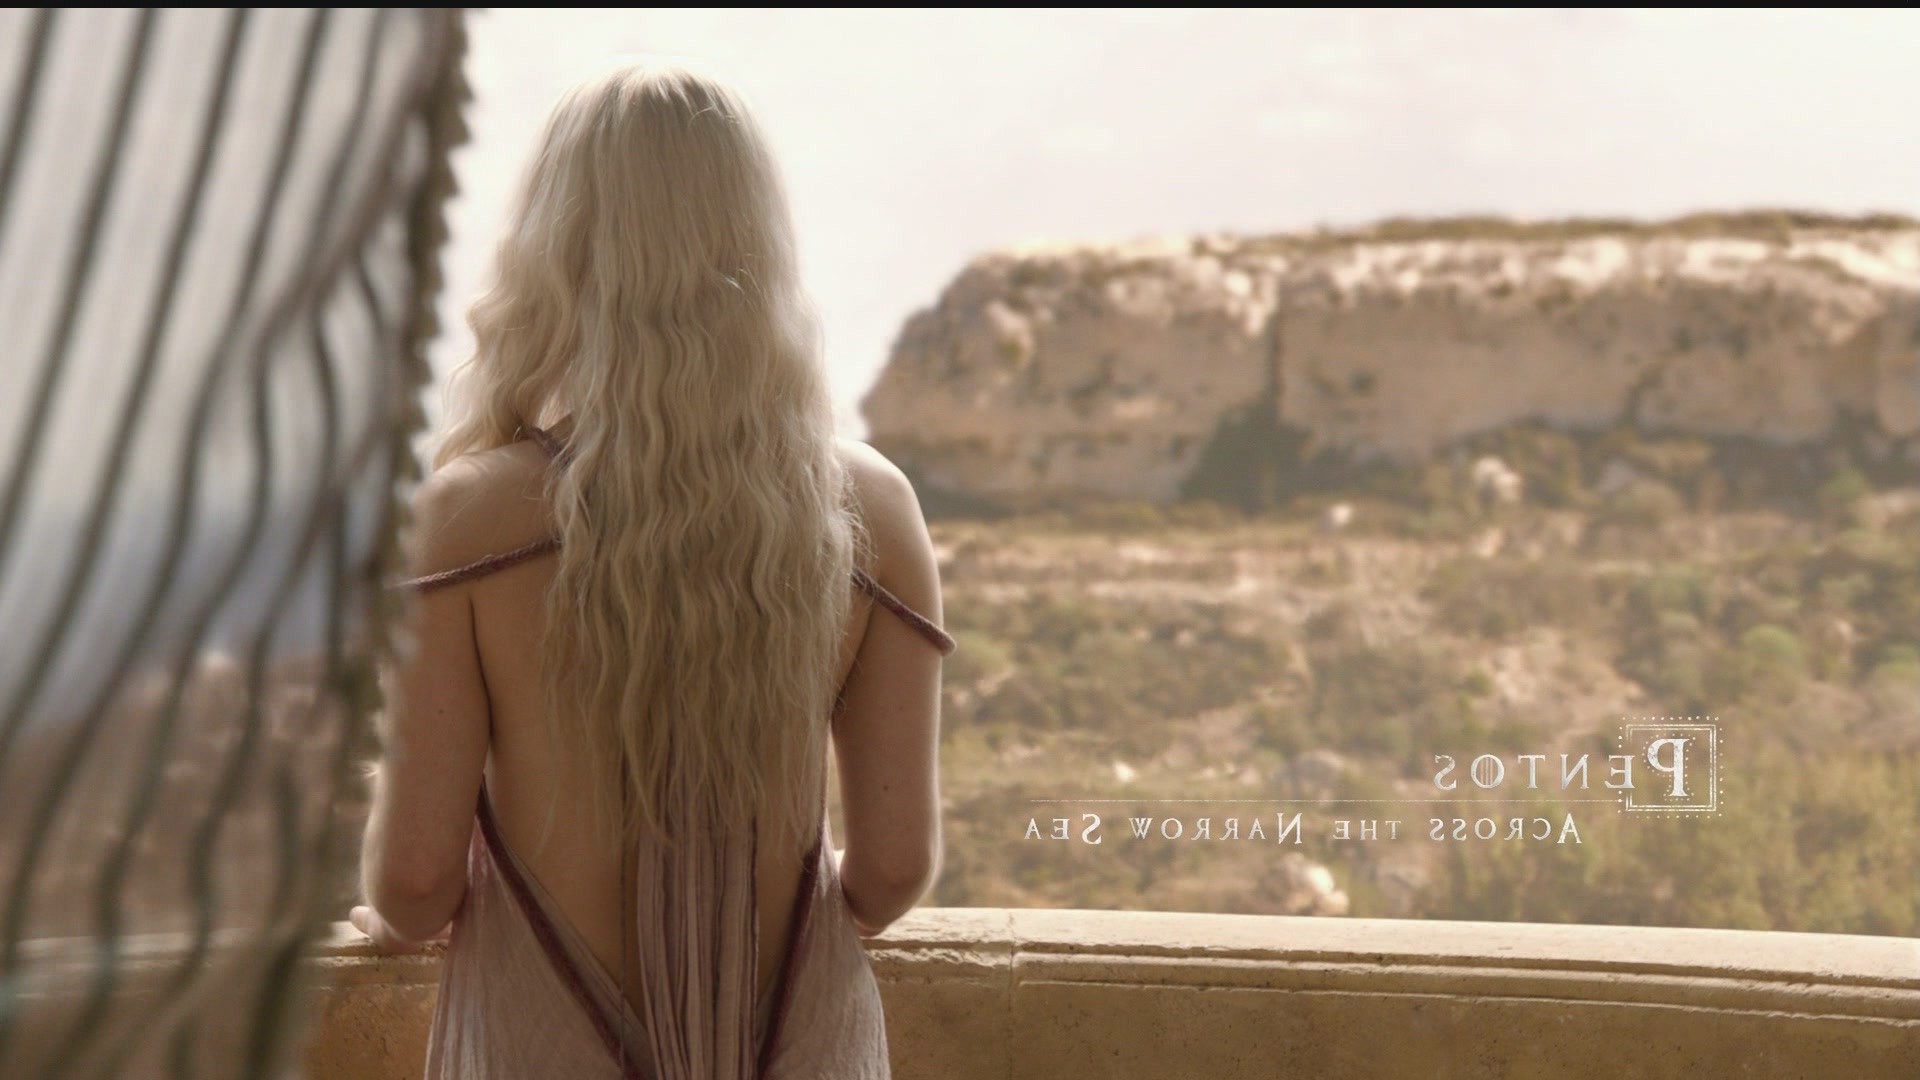 Download hd wallpapers of 3367-Game Of Thrones, Daenerys Targaryen, Emilia ...